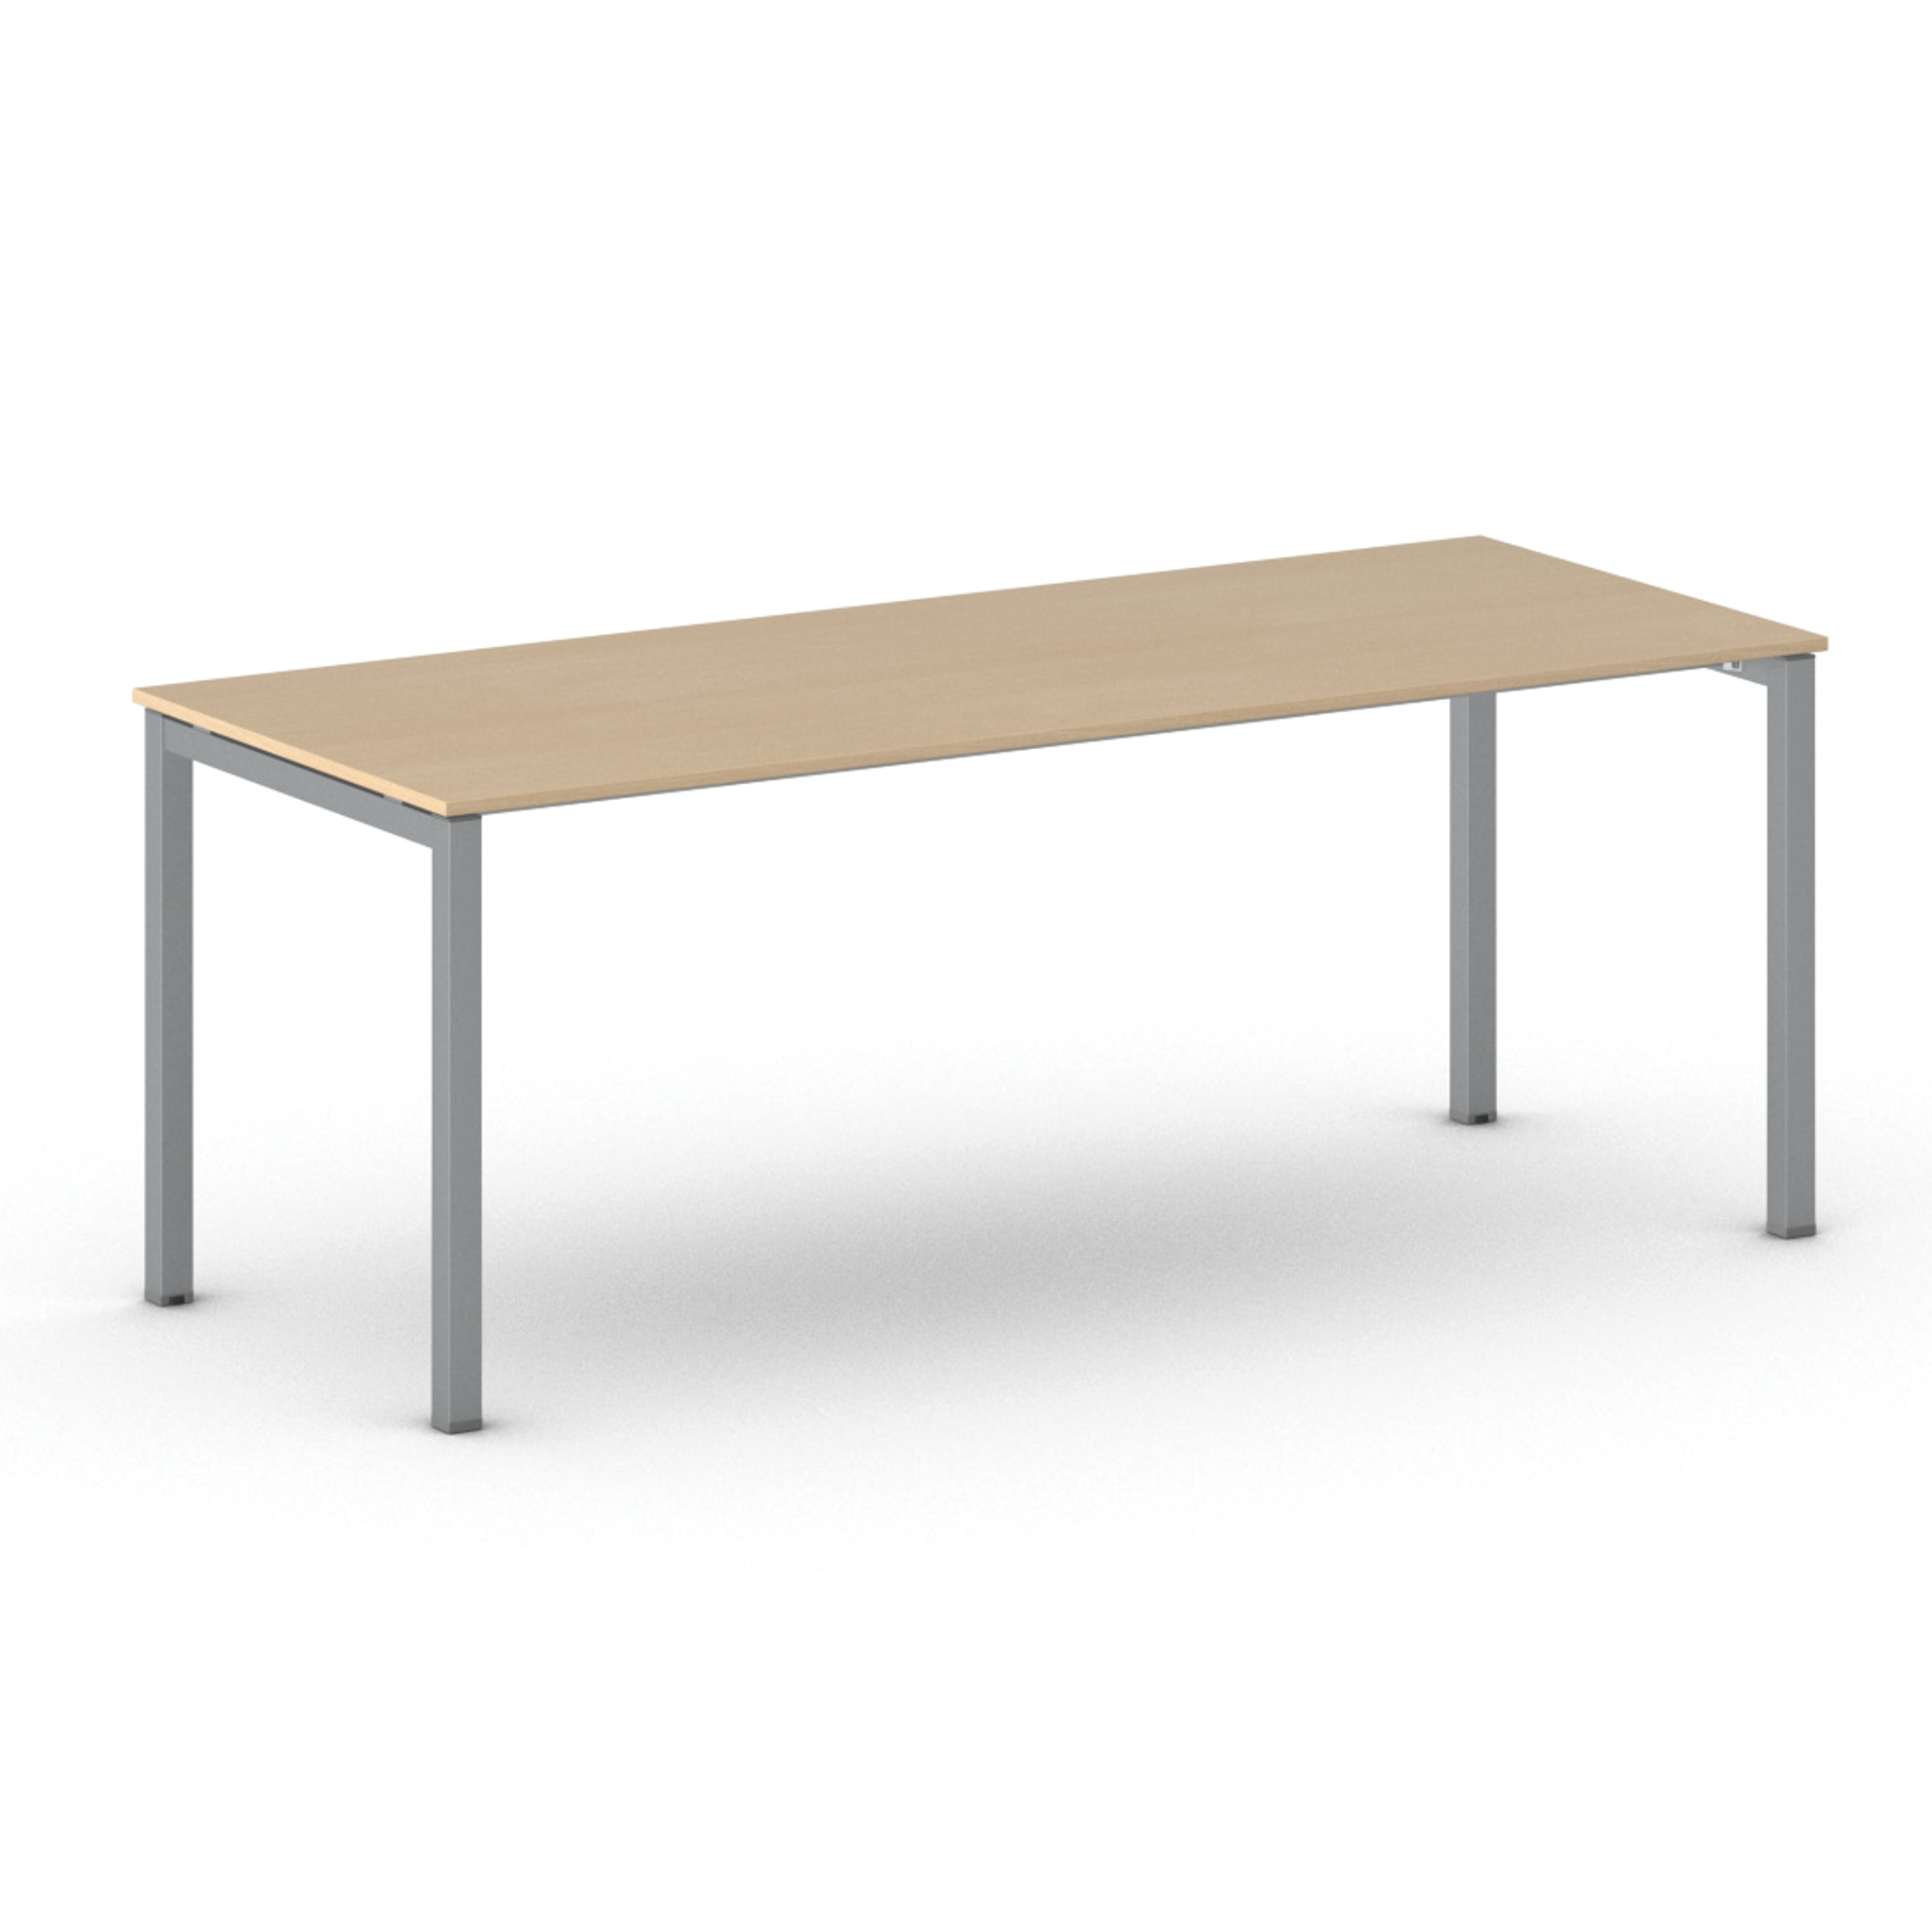 Stůl PRIMO SQUARE se šedostříbrnou podnoží 2000 x 800 x 750 mm, buk